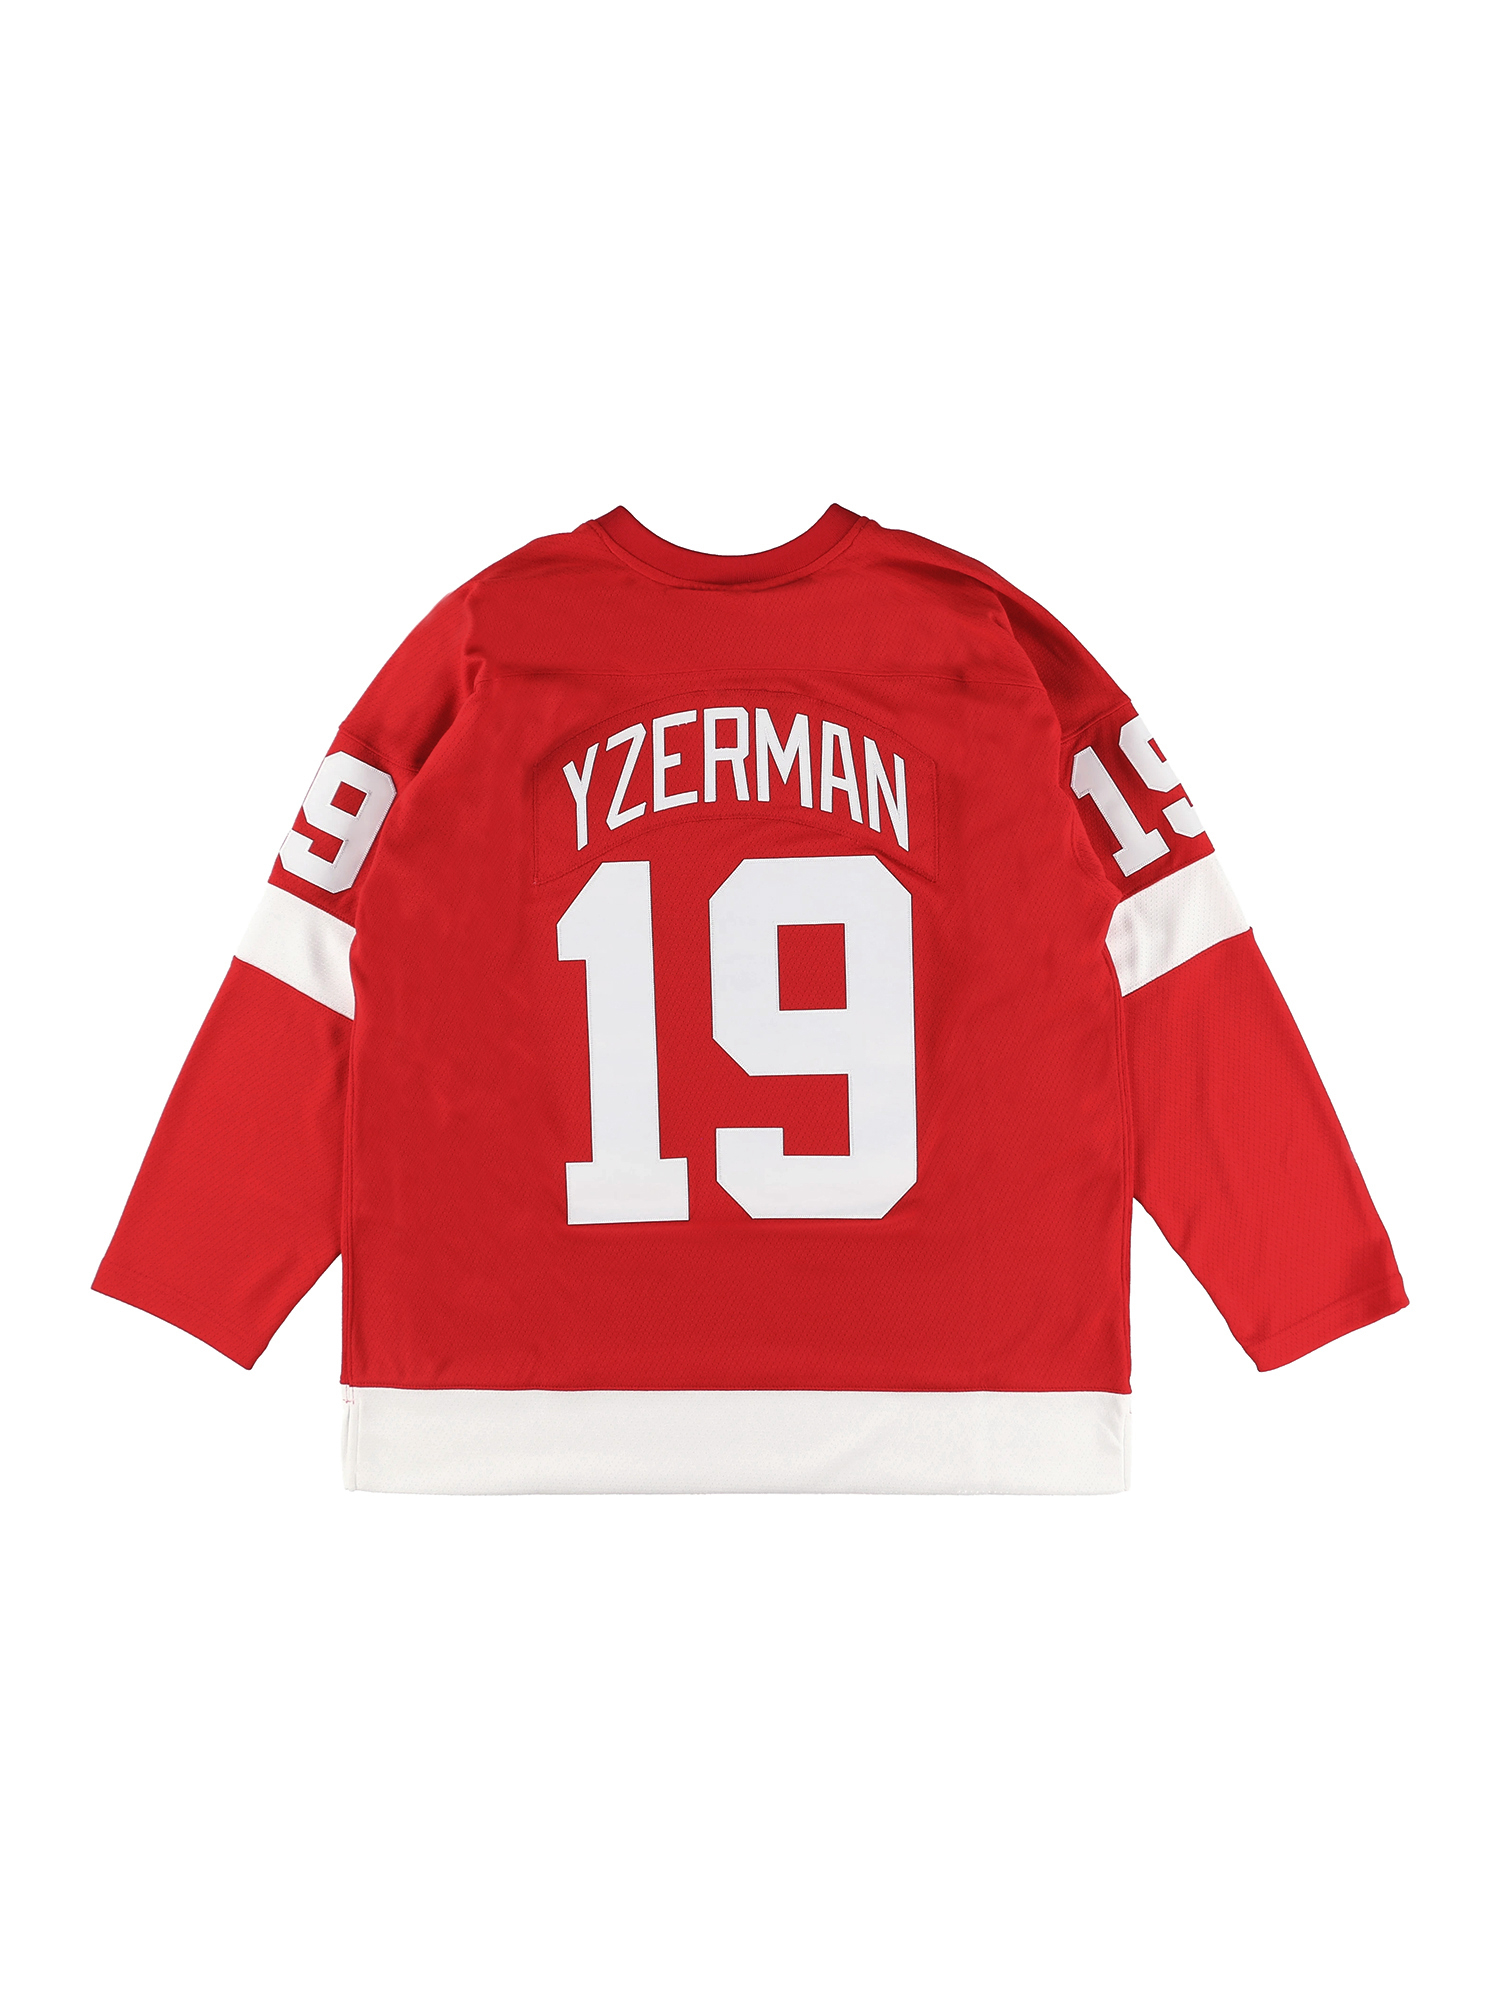 スティーブ・アイザーマン レッドウィングス ロード ブルーラインジャージ 1996-97 RED WINGS NHL DARK JERSEY  STEVE YZERMAN